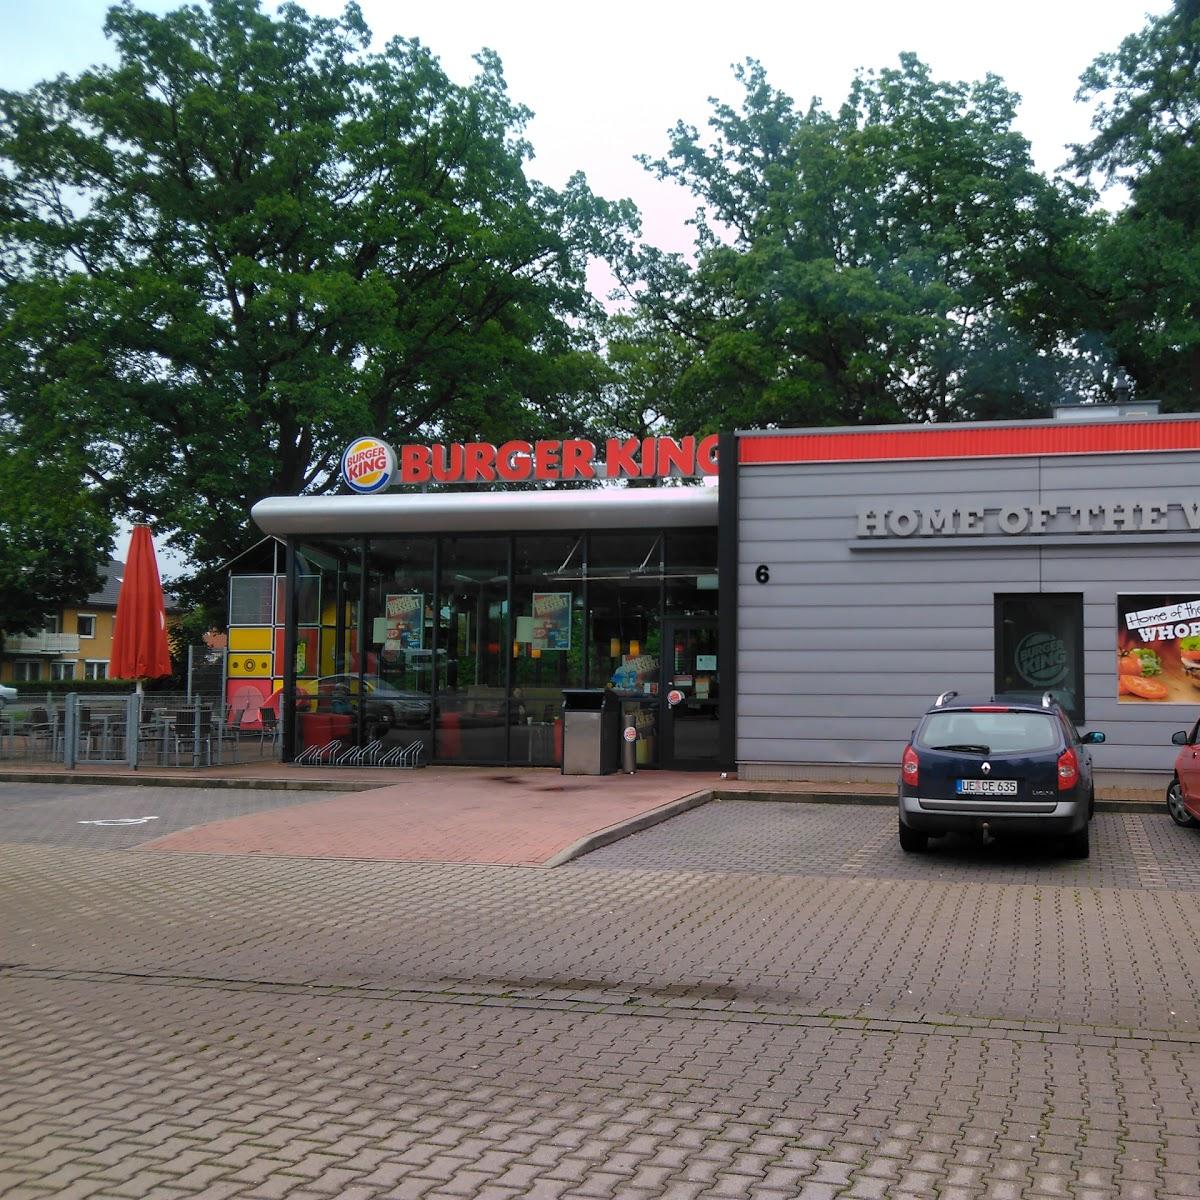 Restaurant "Burger King" in  Munster